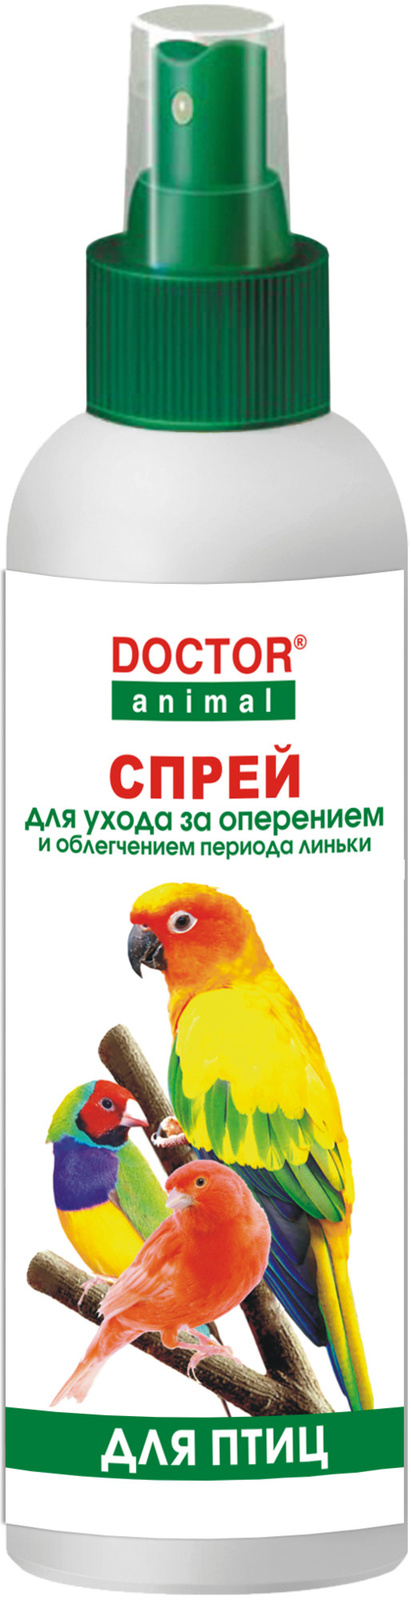 цена Бионикс Бионикс спрей DOCTOR Animal для ухода за оперением, для птиц (215 г)